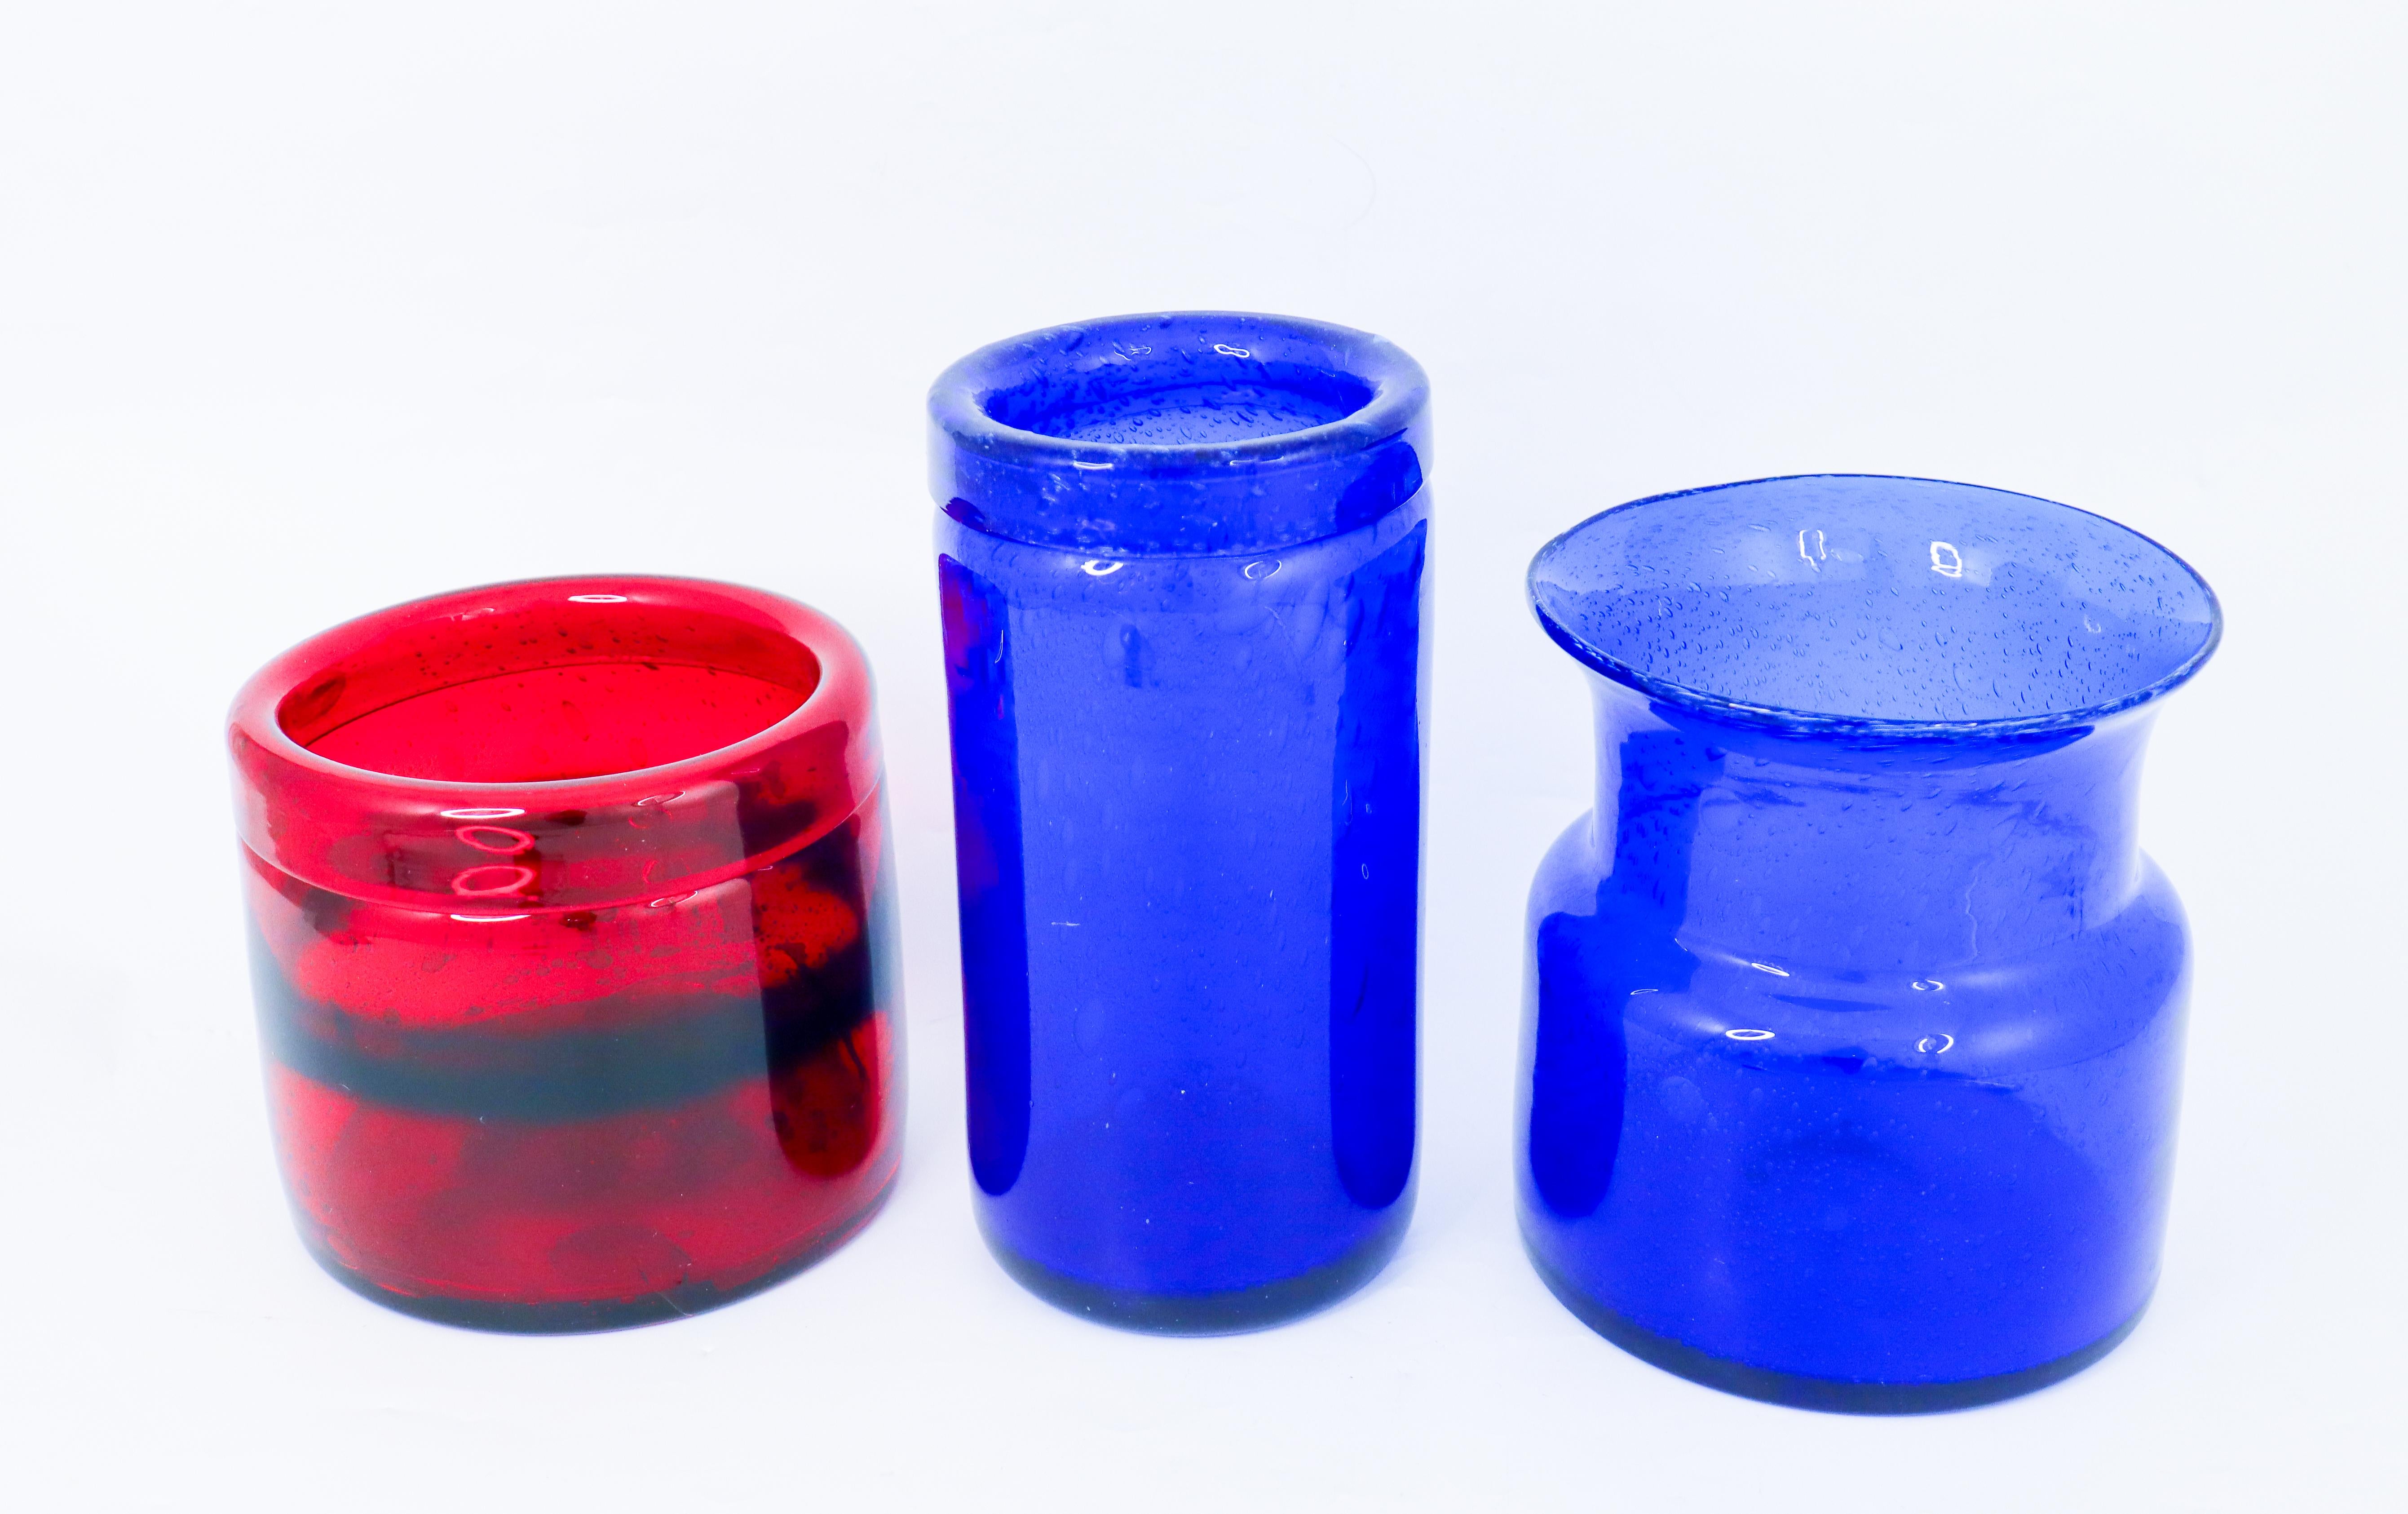 Swedish 3 Red & Blue Glass Vases - Boda Sweden - Erik Höglund - 1960s Midcentury Modern For Sale